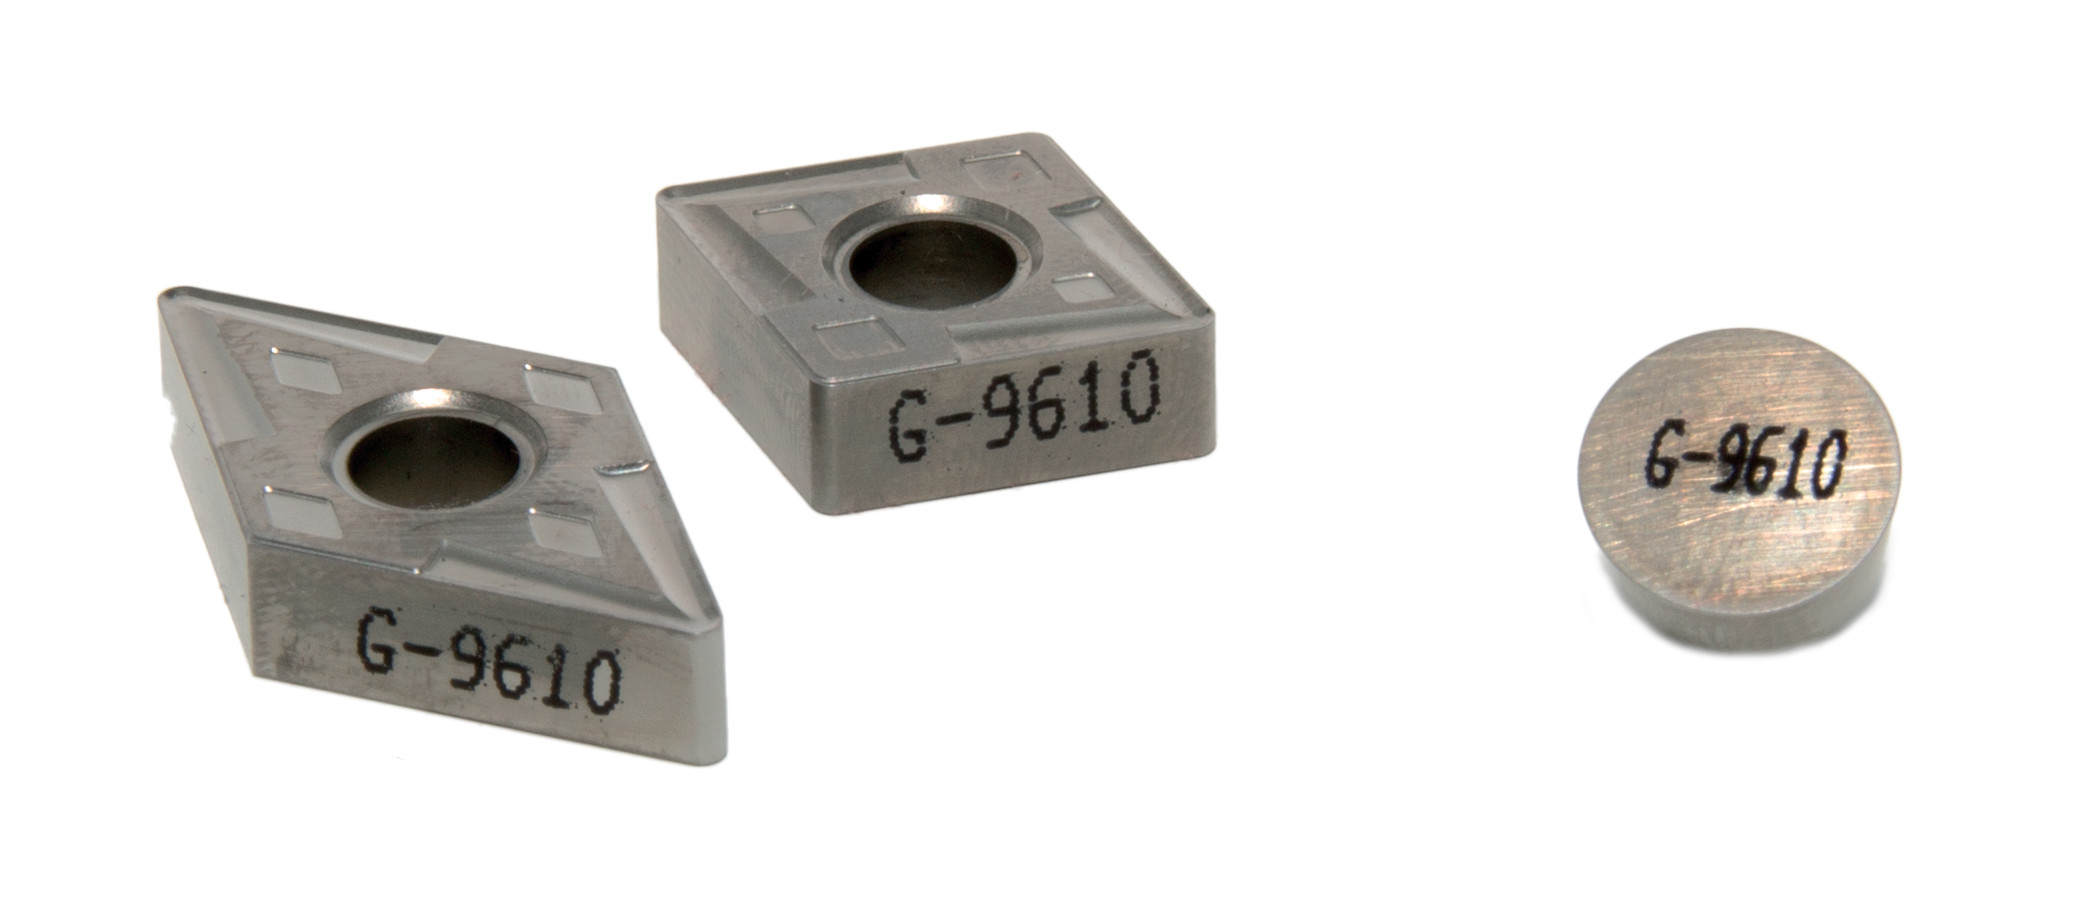 Greenleaf G-9610 Carbide Inserts